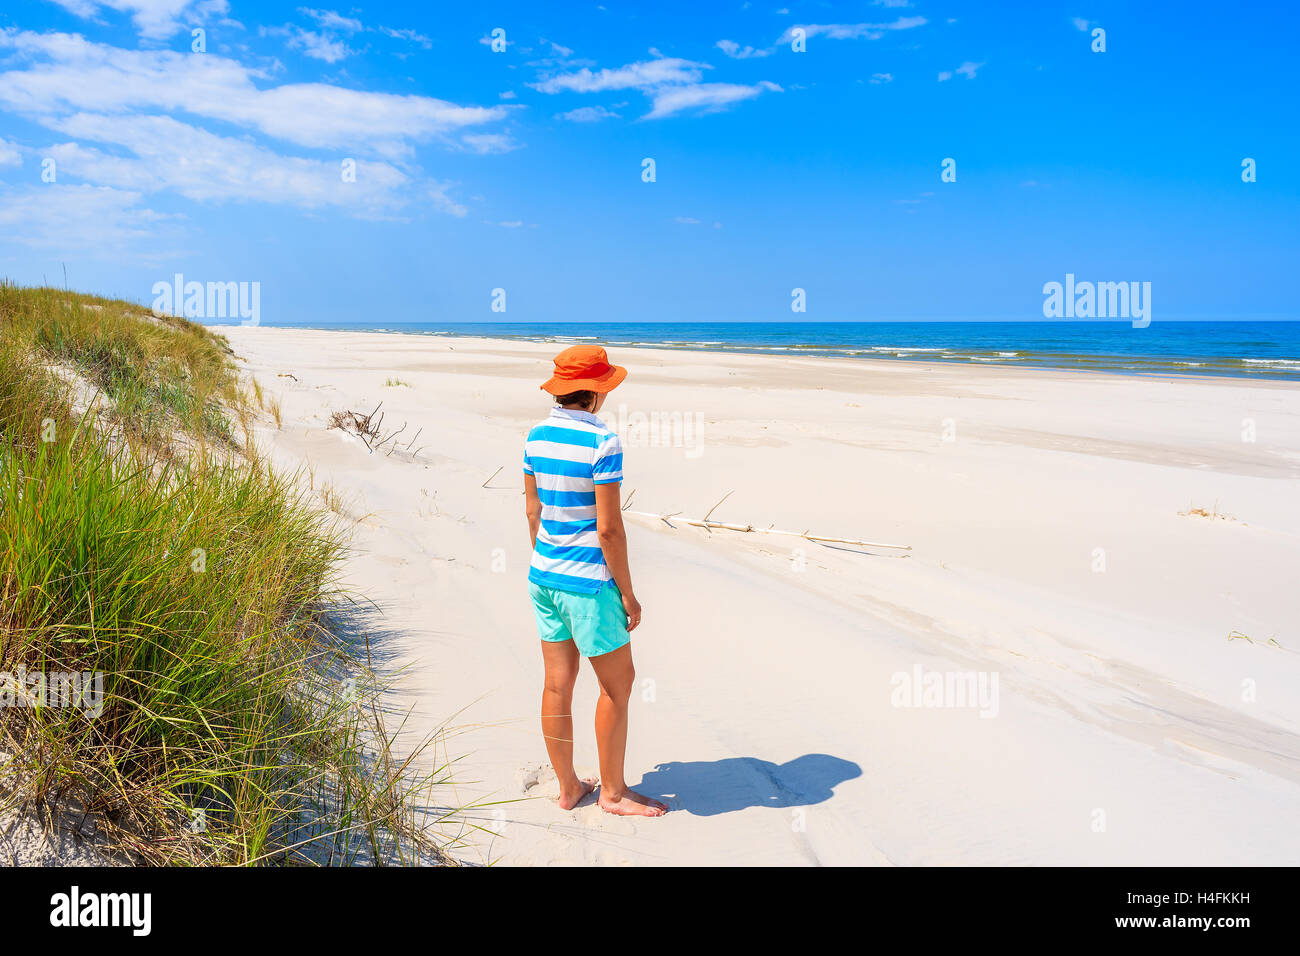 A young woman tourist standing on white sand beach, Baltic Sea, Bialogora coastal village, Poland Stock Photo